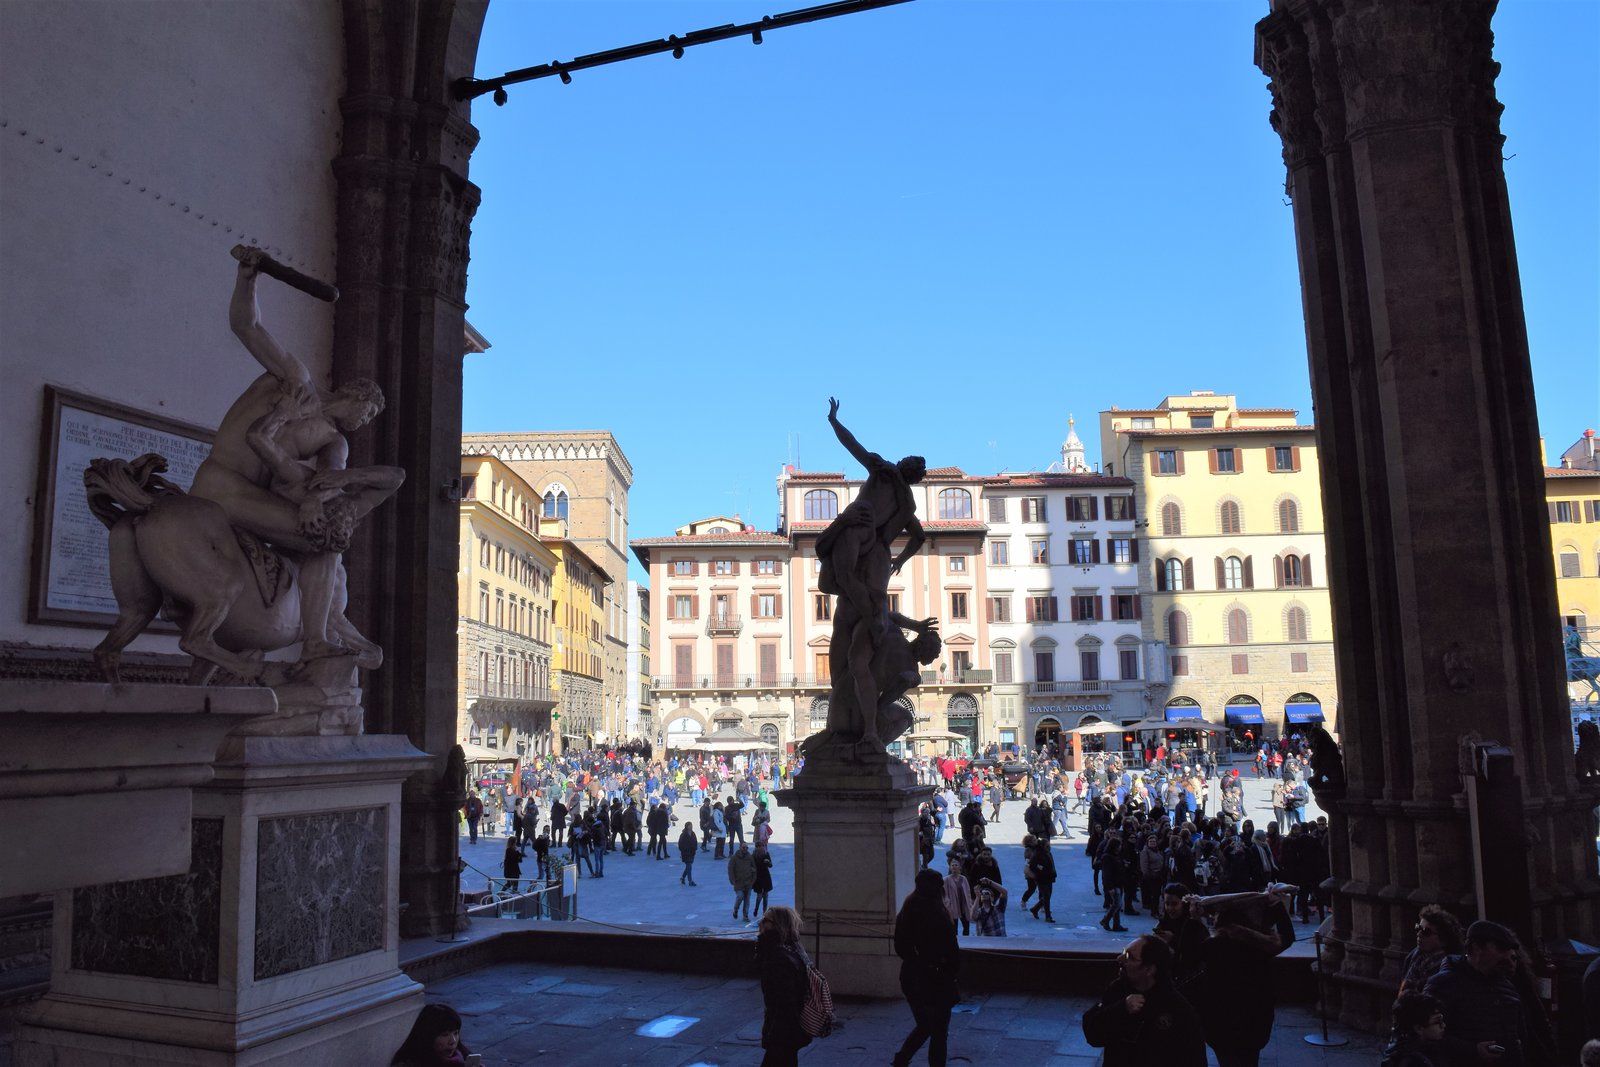 statues in Loggia della Signoria, Florence, Italy